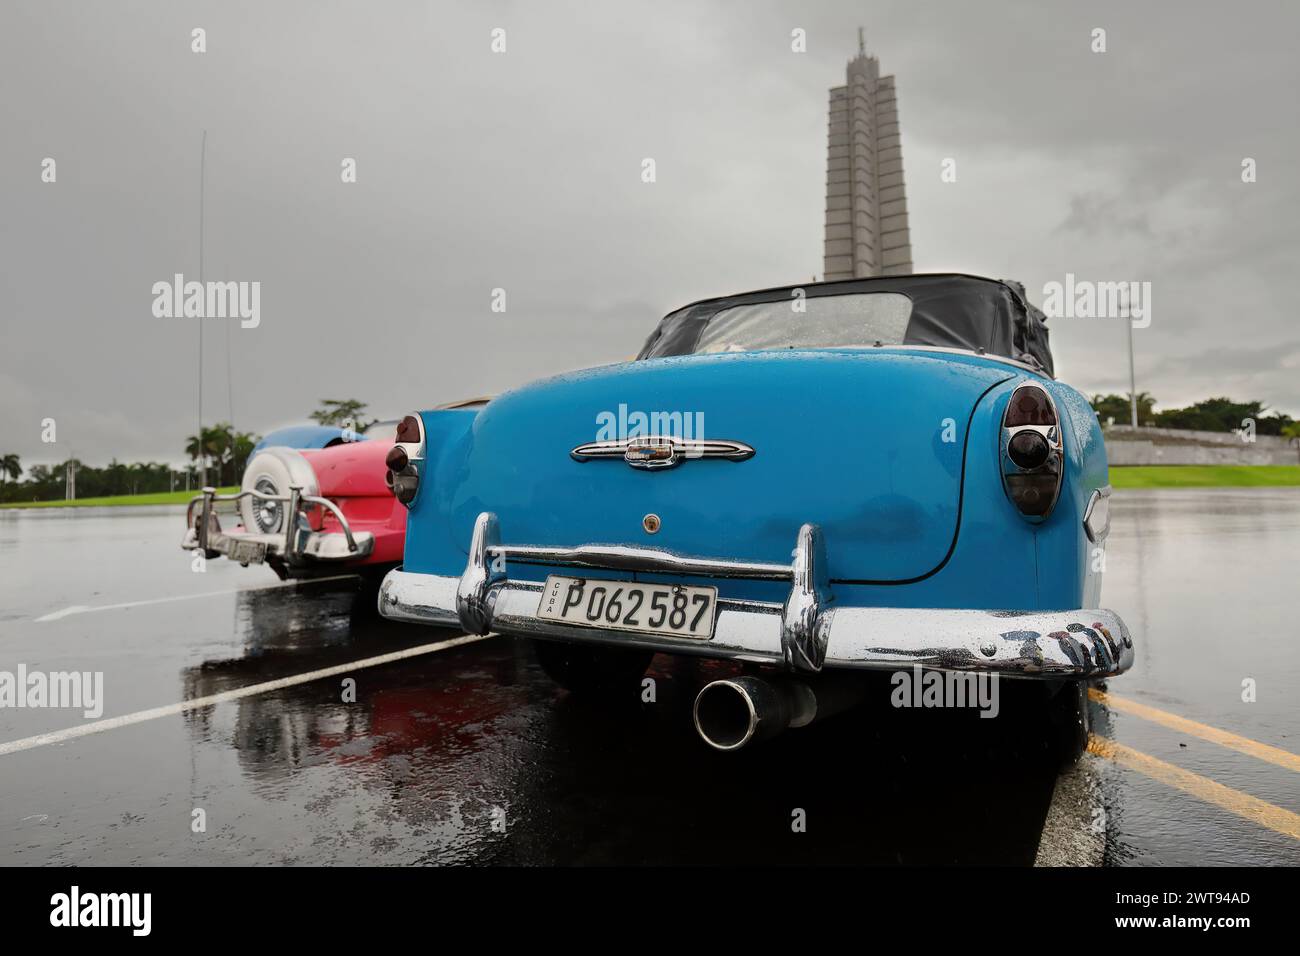 076 Klassische blau-rosa-blaue amerikanische Autos - Almendron, Yank Tank Chevrolet-Ford-Chevrolet - von 1953-56-50, geparkt auf der Plaza de la Revolucion. Havanna-Kuba Stockfoto